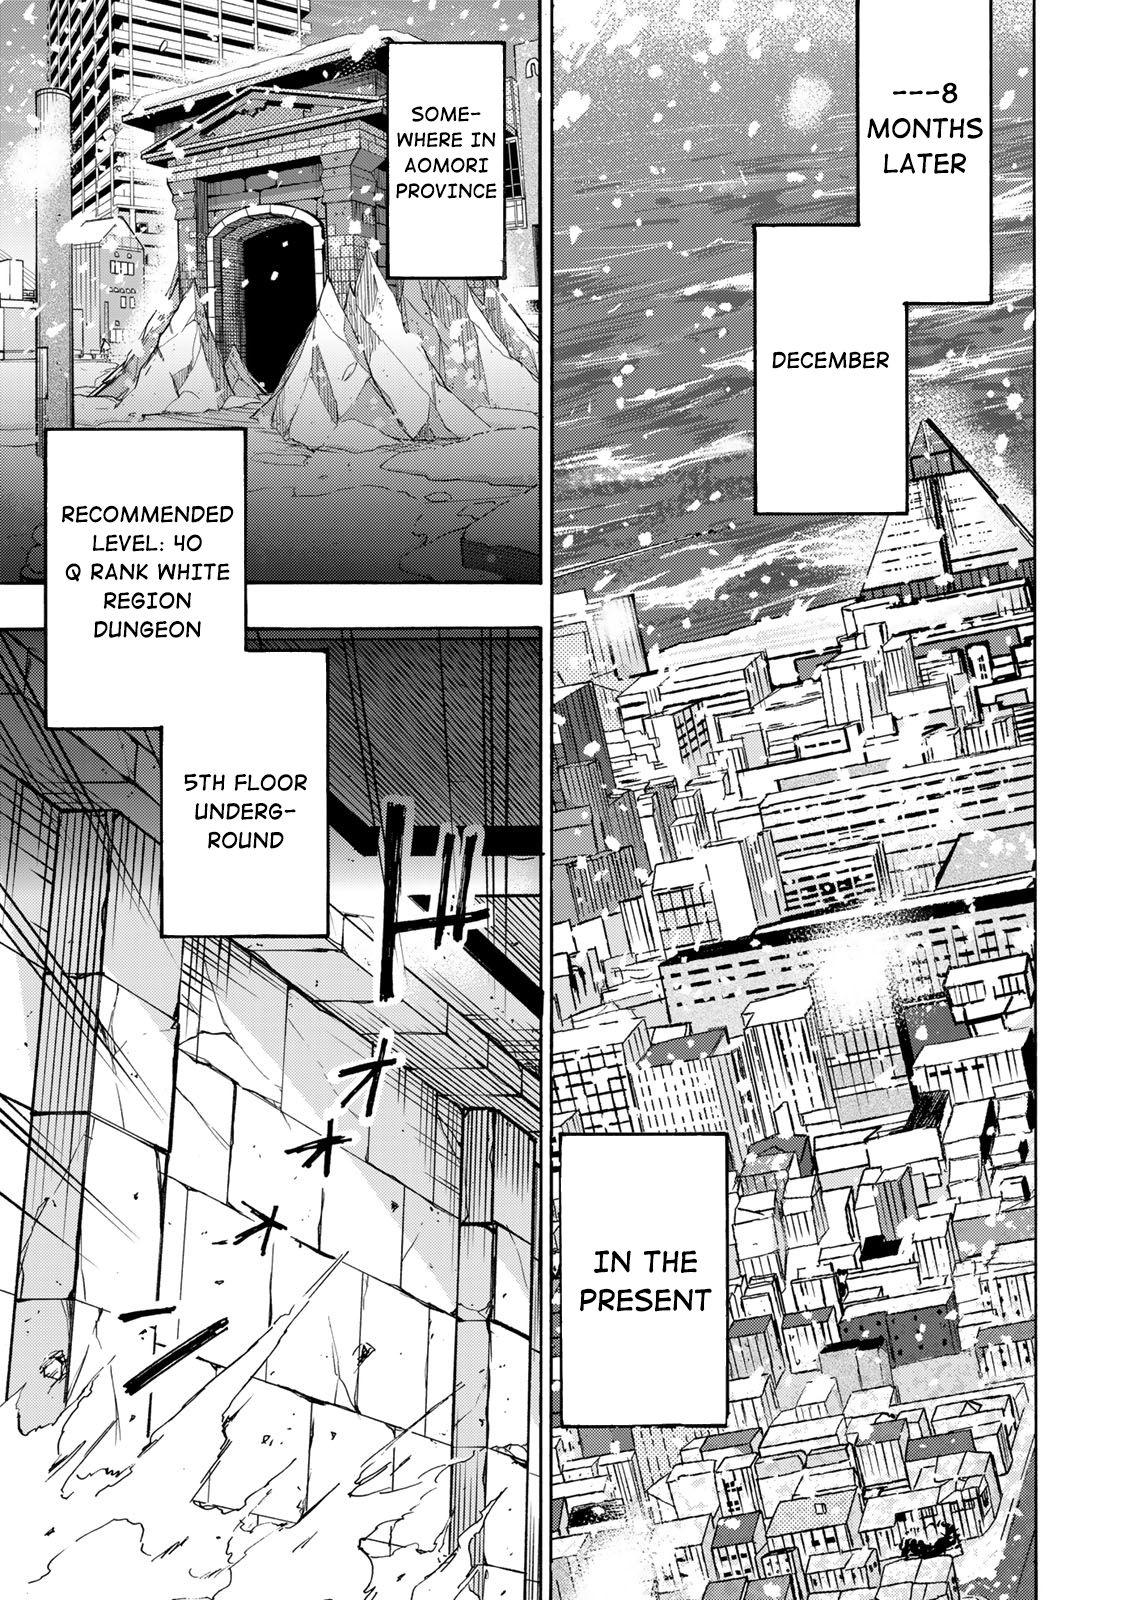 Saikyou de Saisoku no Mugen Level Up Ch.1 Page 22 - Mangago